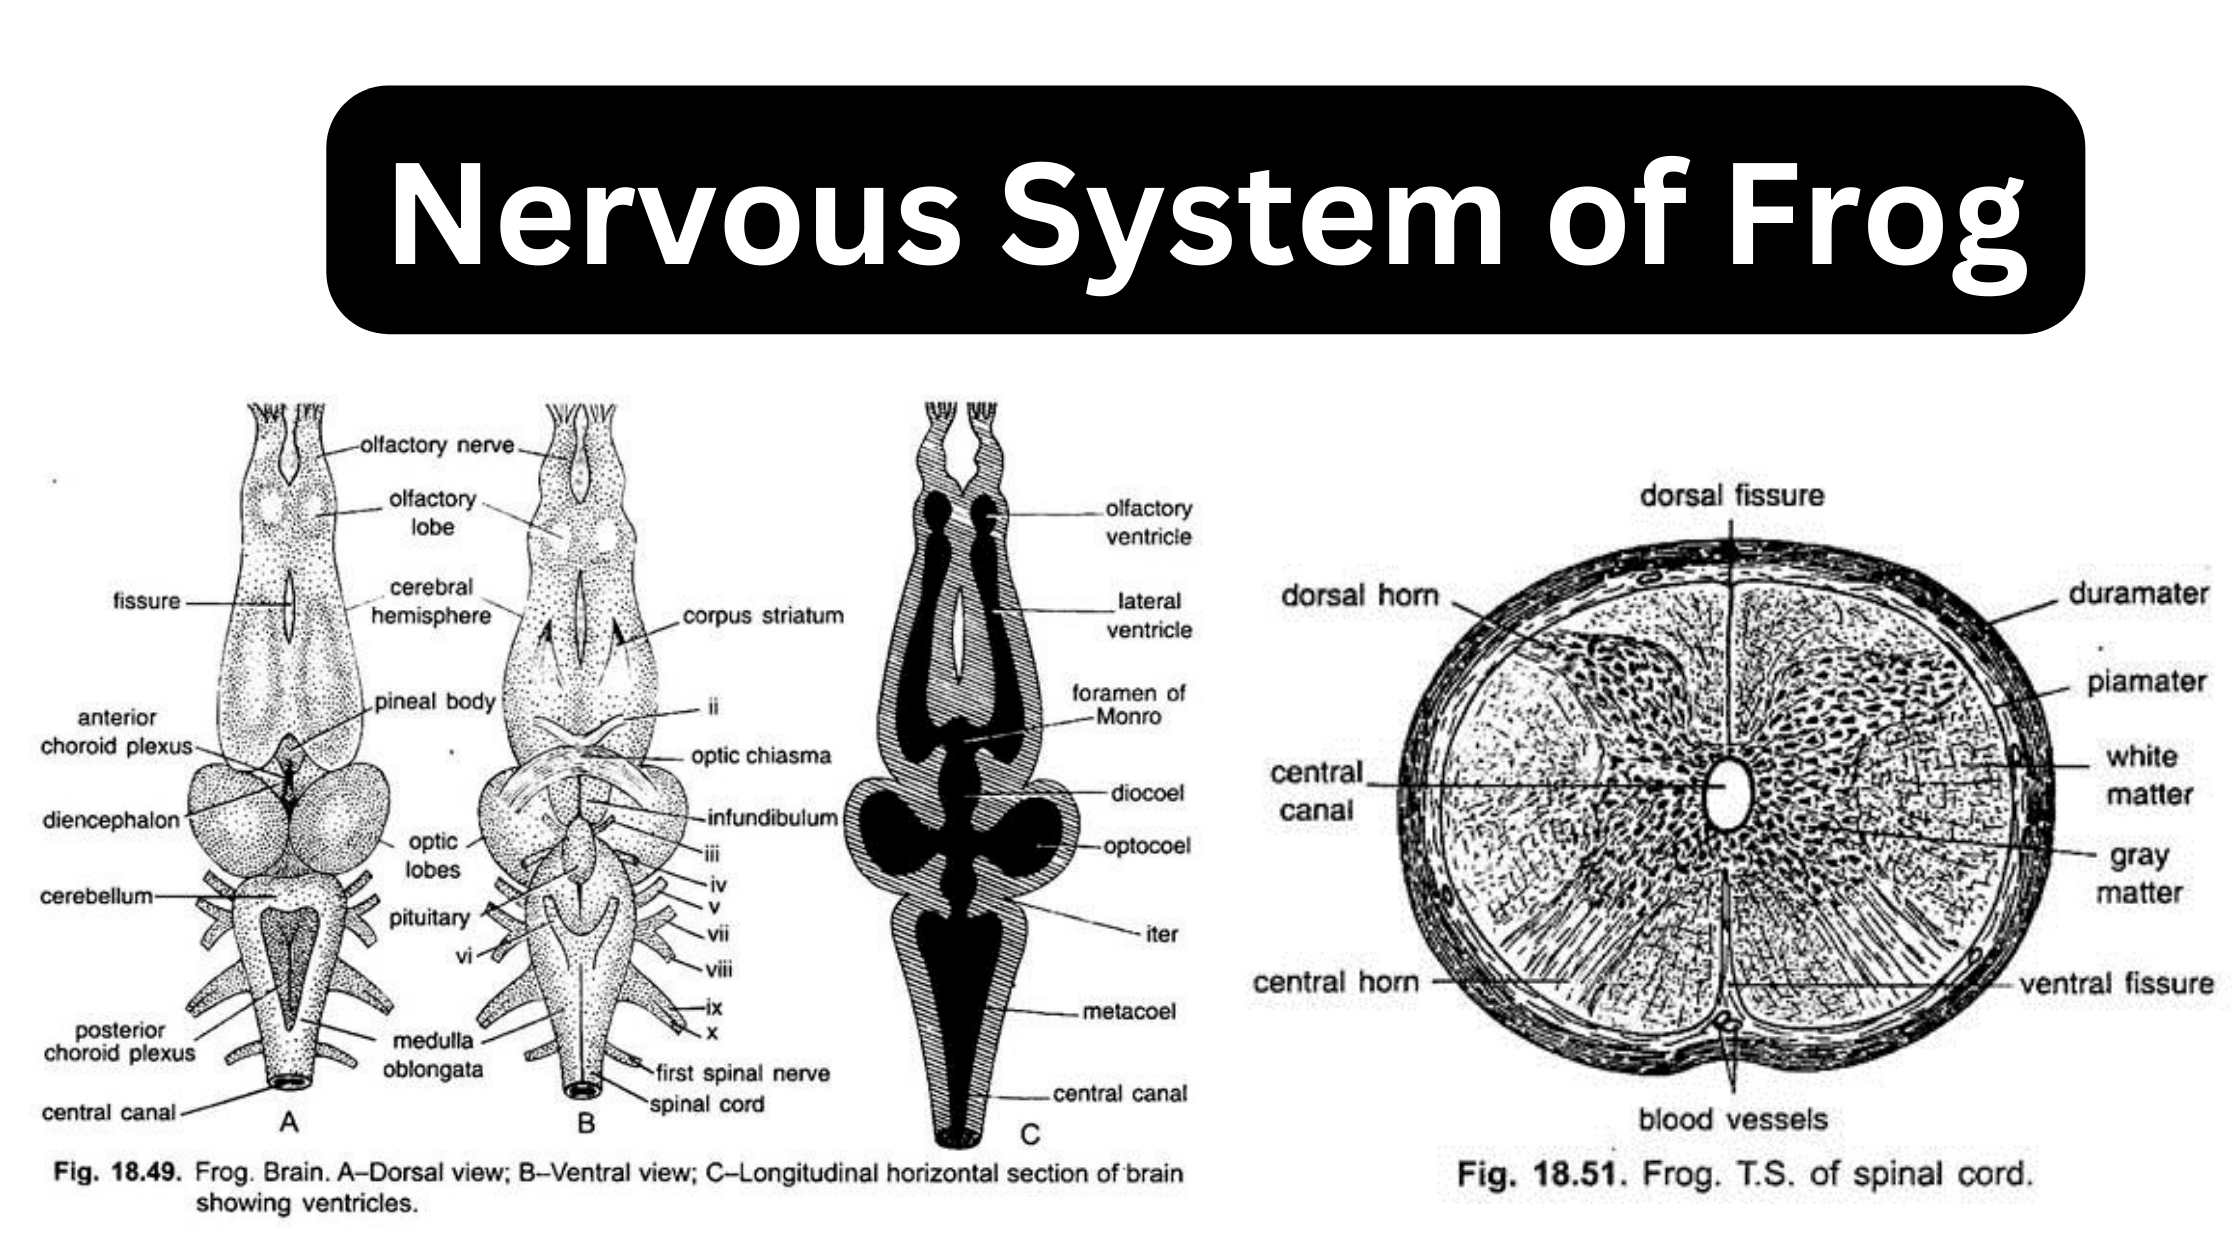 Nervous System of Frog